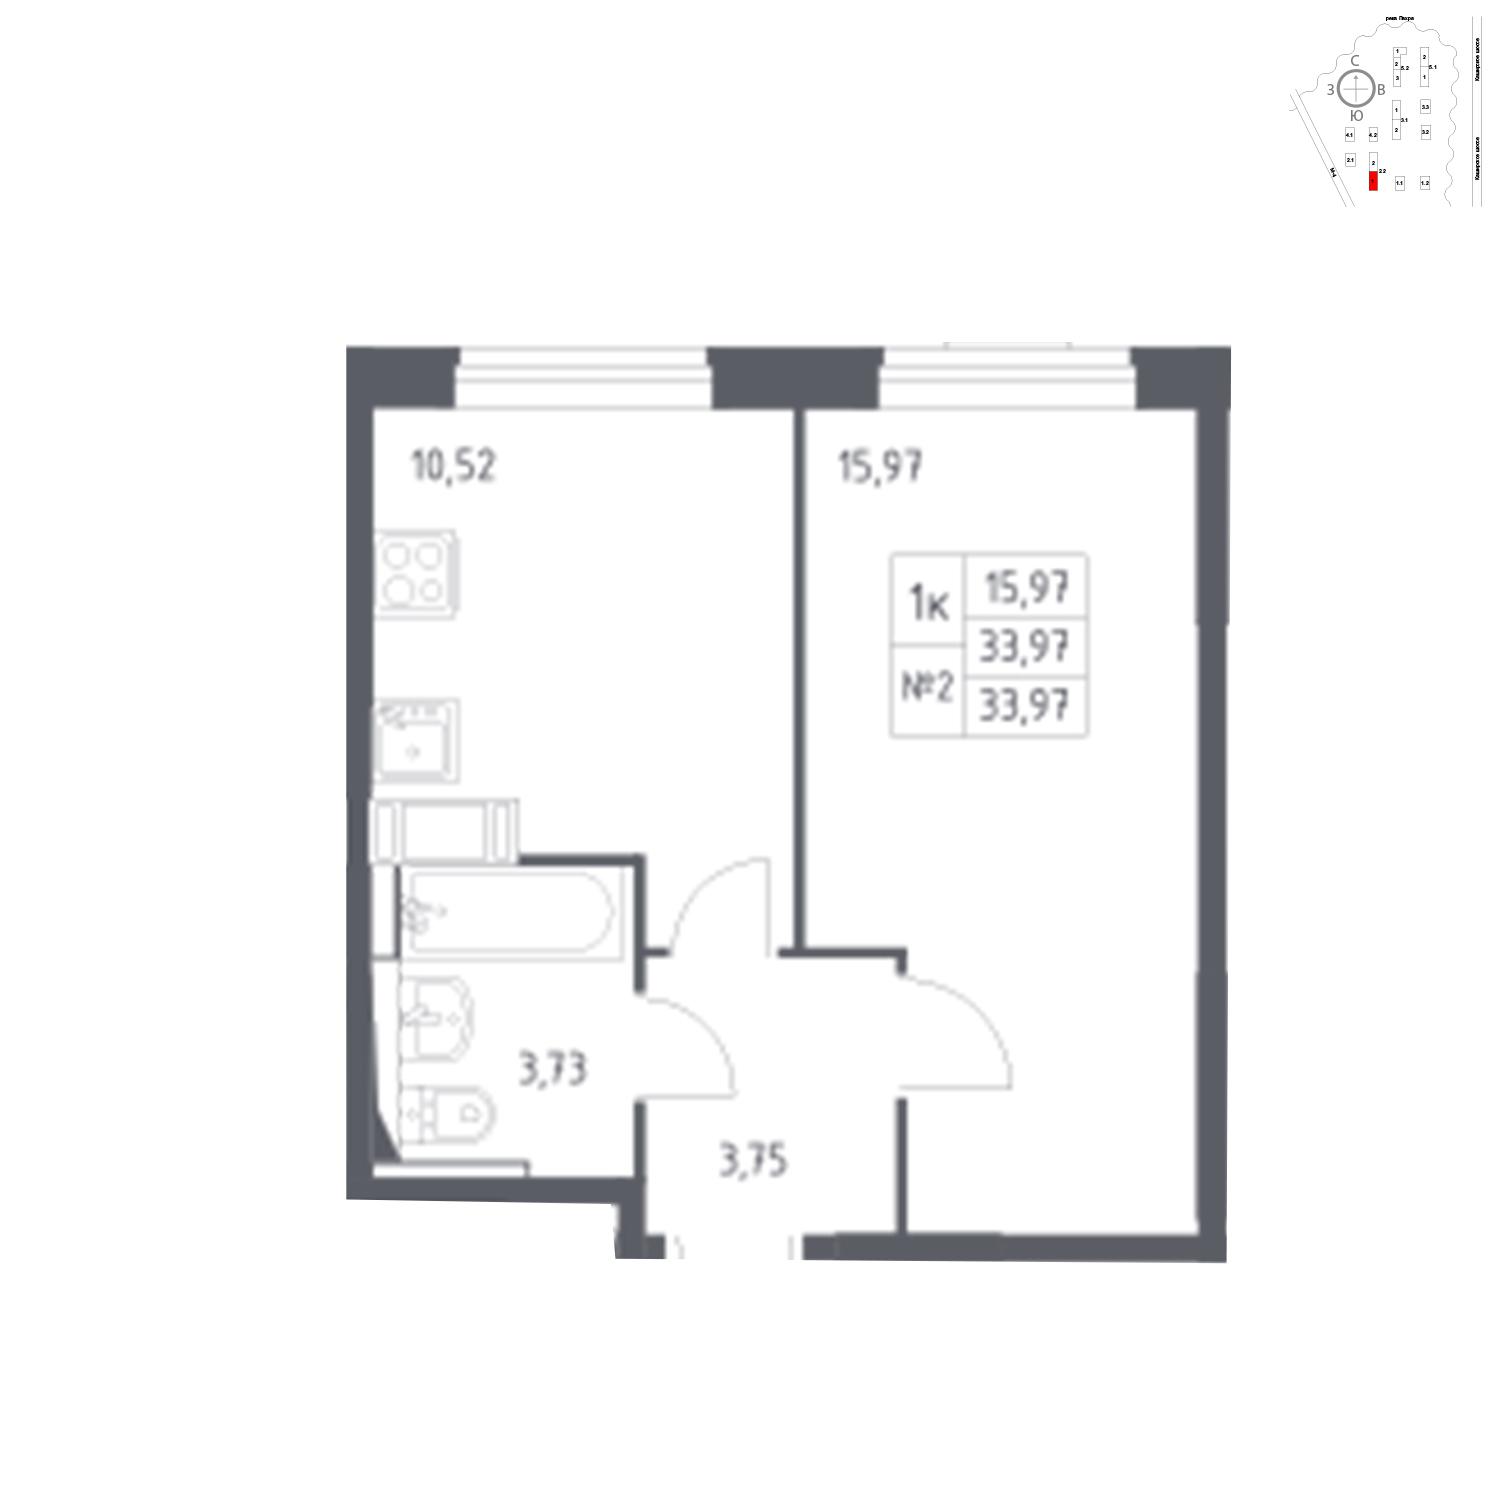 Продаётся 1-комнатная квартира в новостройке 34.0 кв.м. этаж 12/17 за 6 121 537 руб 